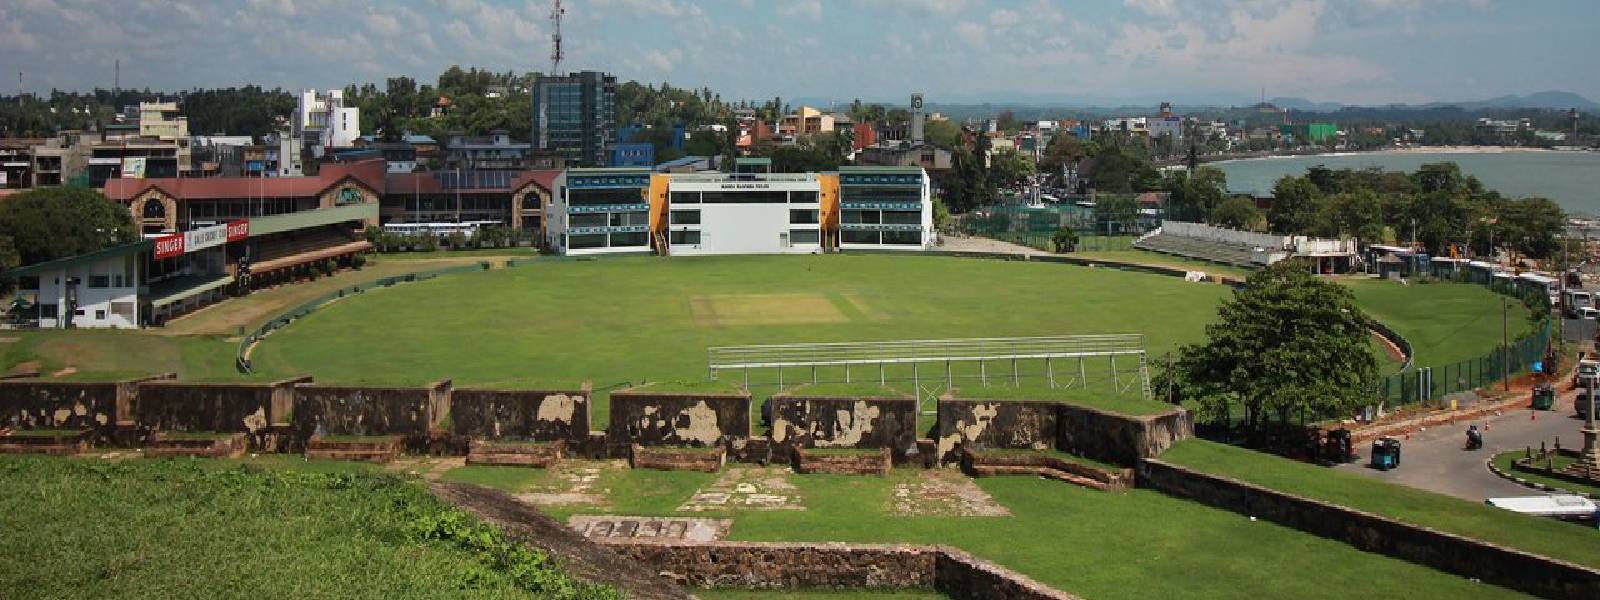 Galle stadium wins “Cricket Ground World Cup”